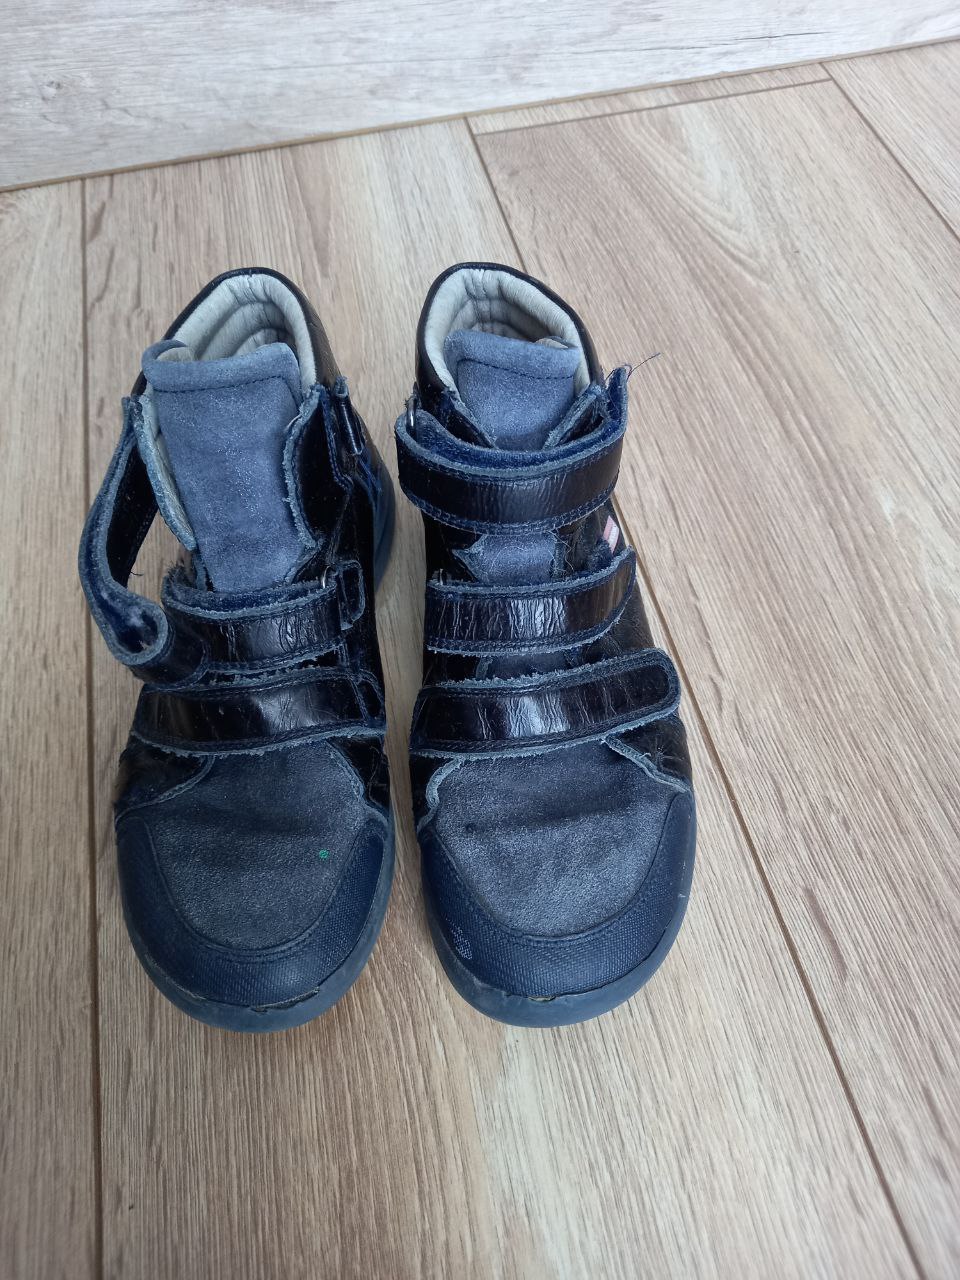 Фото  Детские ботинки темного цвета